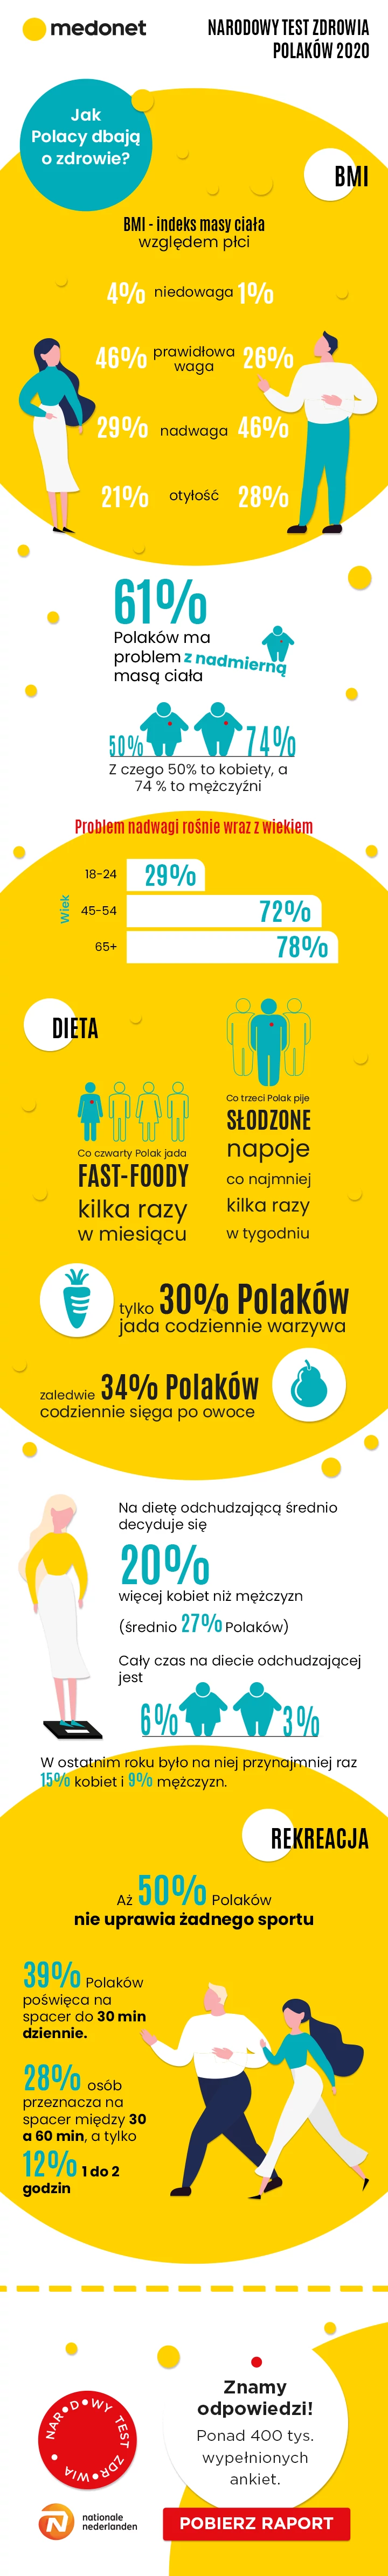 Polacy i otyłość